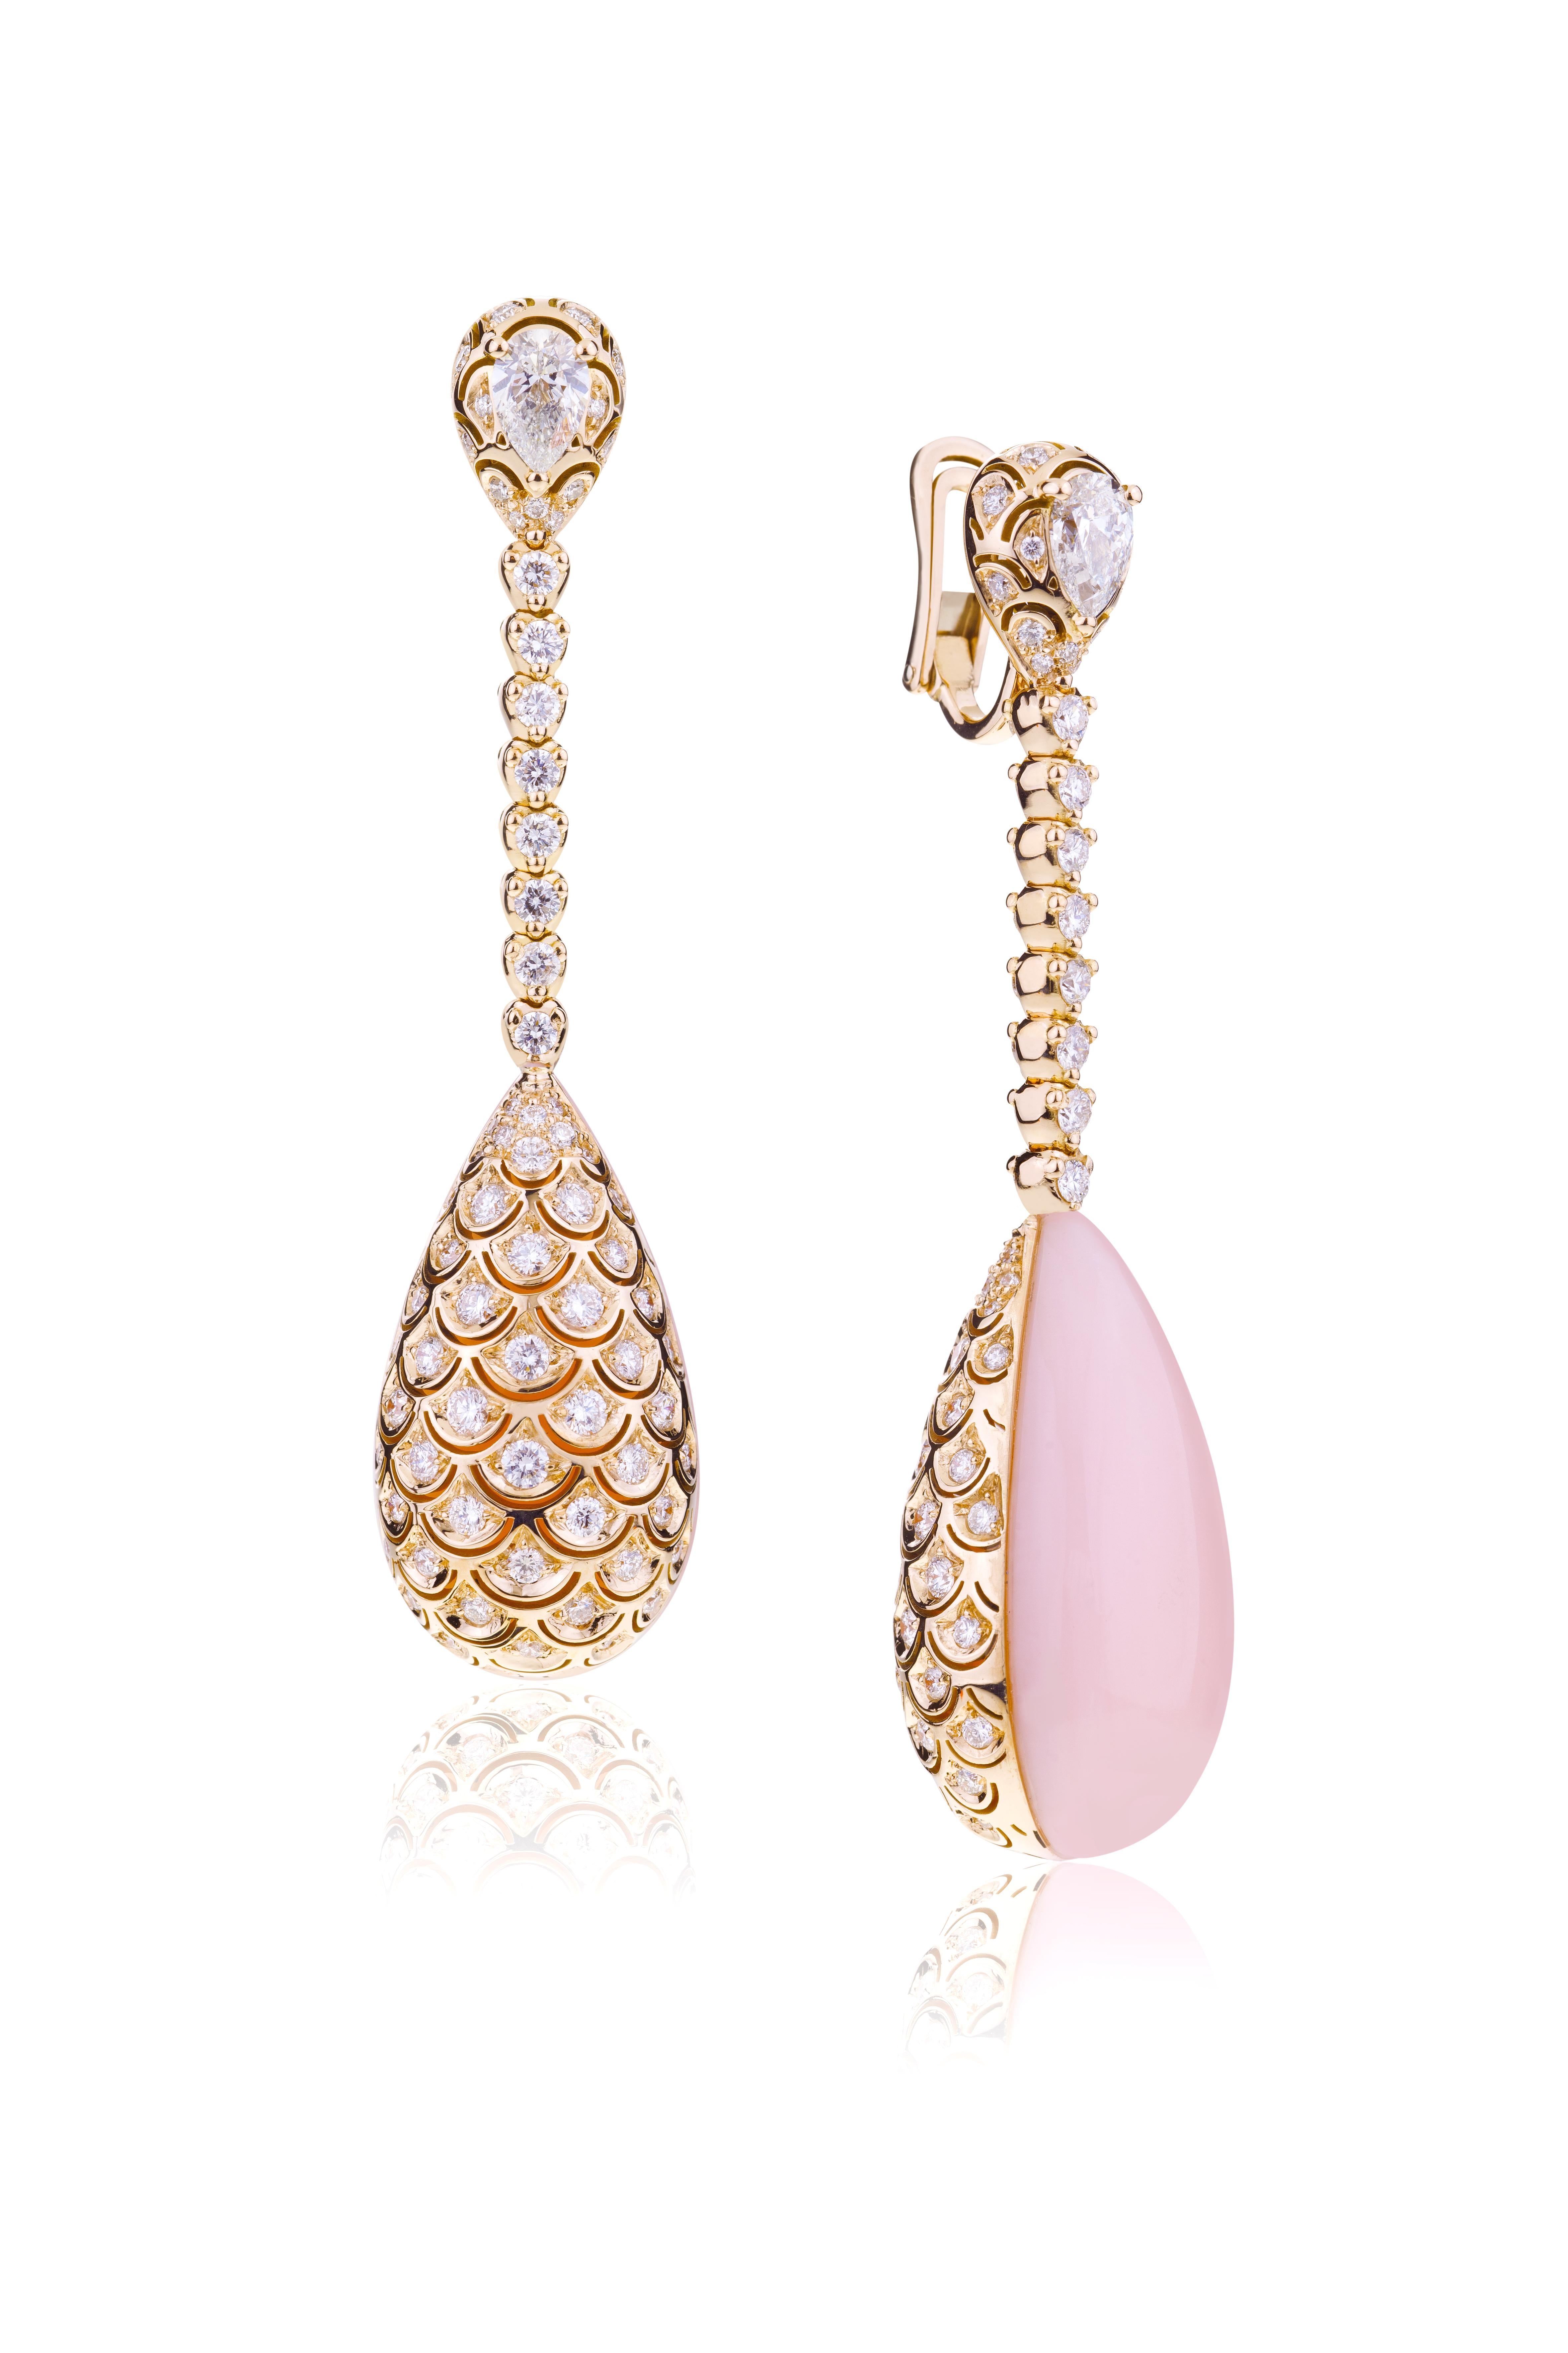 Boucles d'oreilles du soir à double face en opale rose et diamants avec diamants taille poire.
Exceptionnelles boucles d'oreilles réversibles dotées d'un mécanisme unique à ressort fait main pour porter des diamants ou de l'opale rose. Les deux